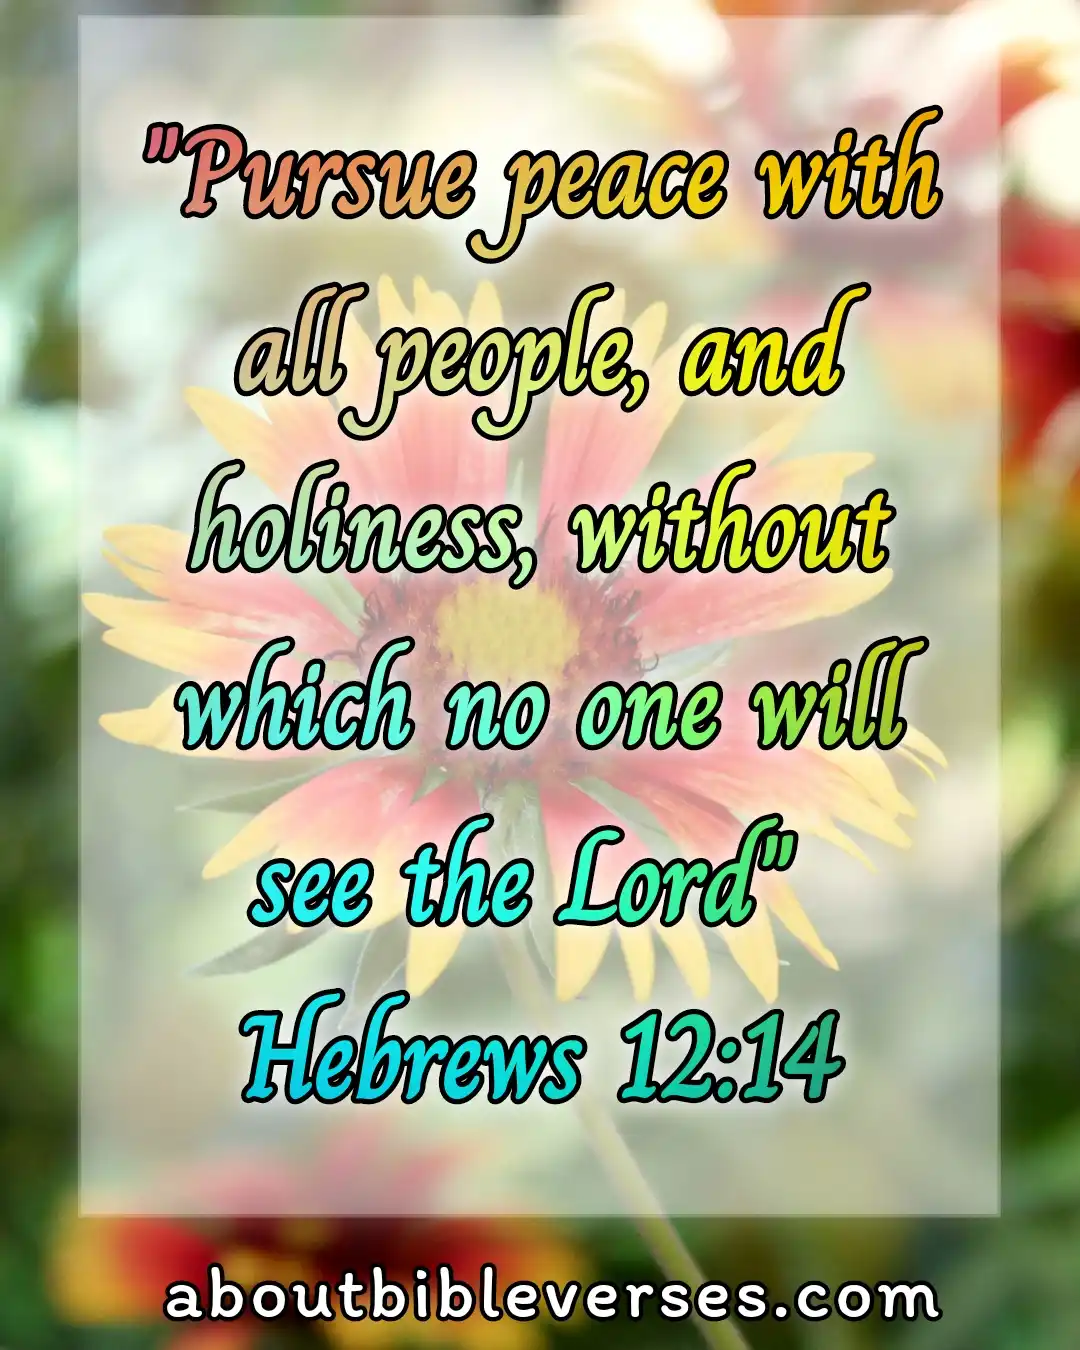 Today's bible verse (Hebrews 12:14)